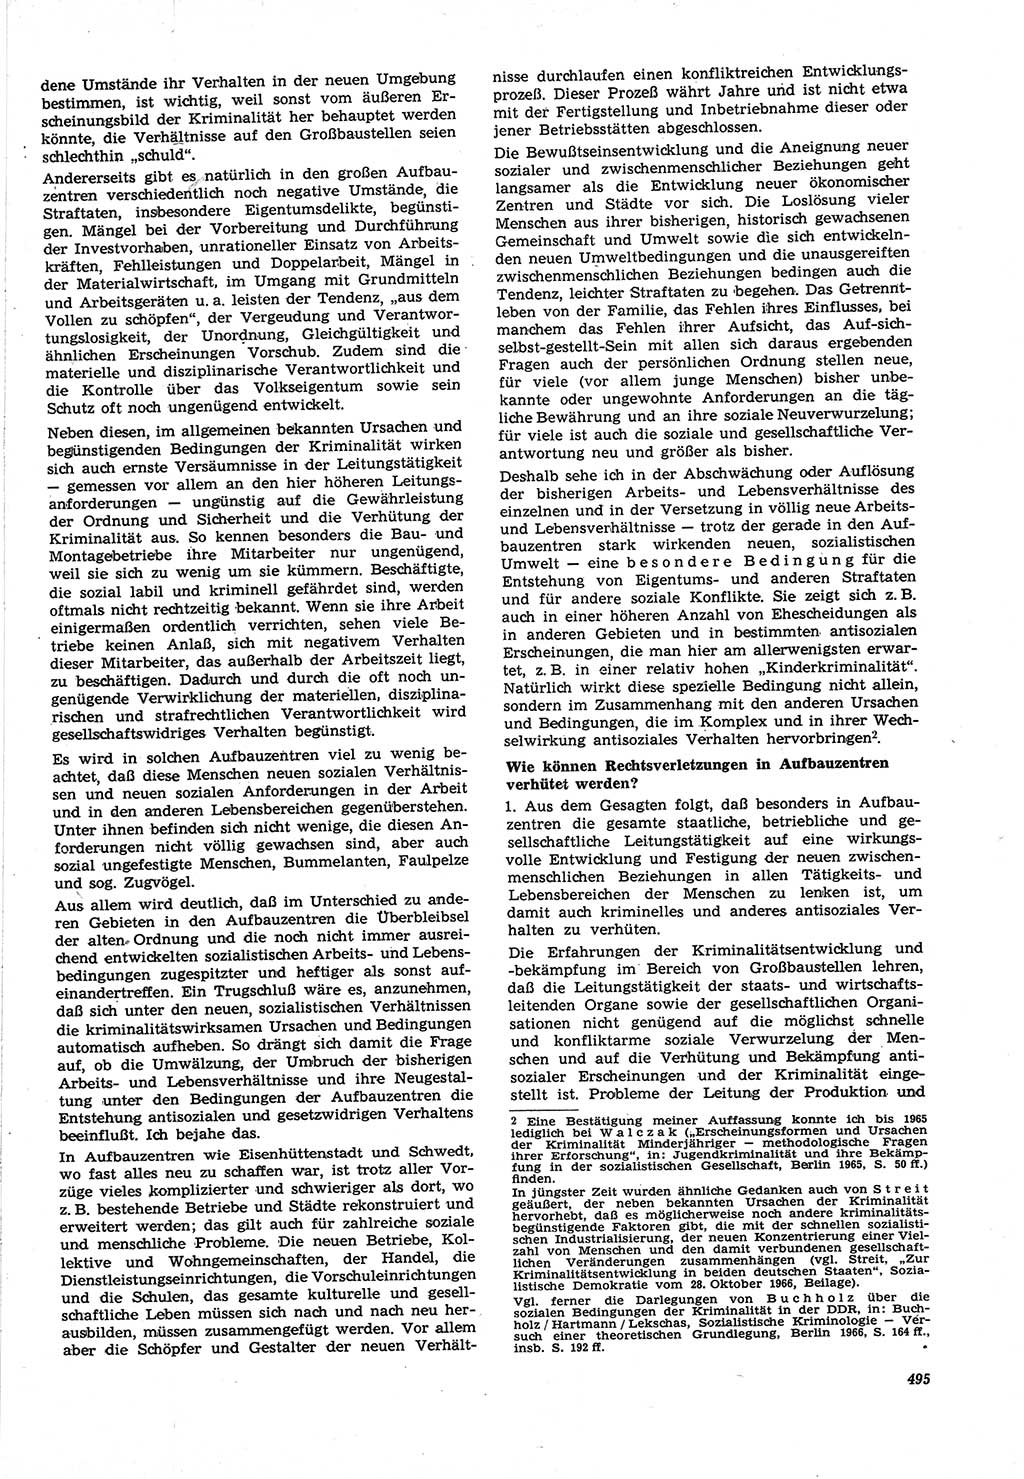 Neue Justiz (NJ), Zeitschrift für Recht und Rechtswissenschaft [Deutsche Demokratische Republik (DDR)], 21. Jahrgang 1967, Seite 495 (NJ DDR 1967, S. 495)